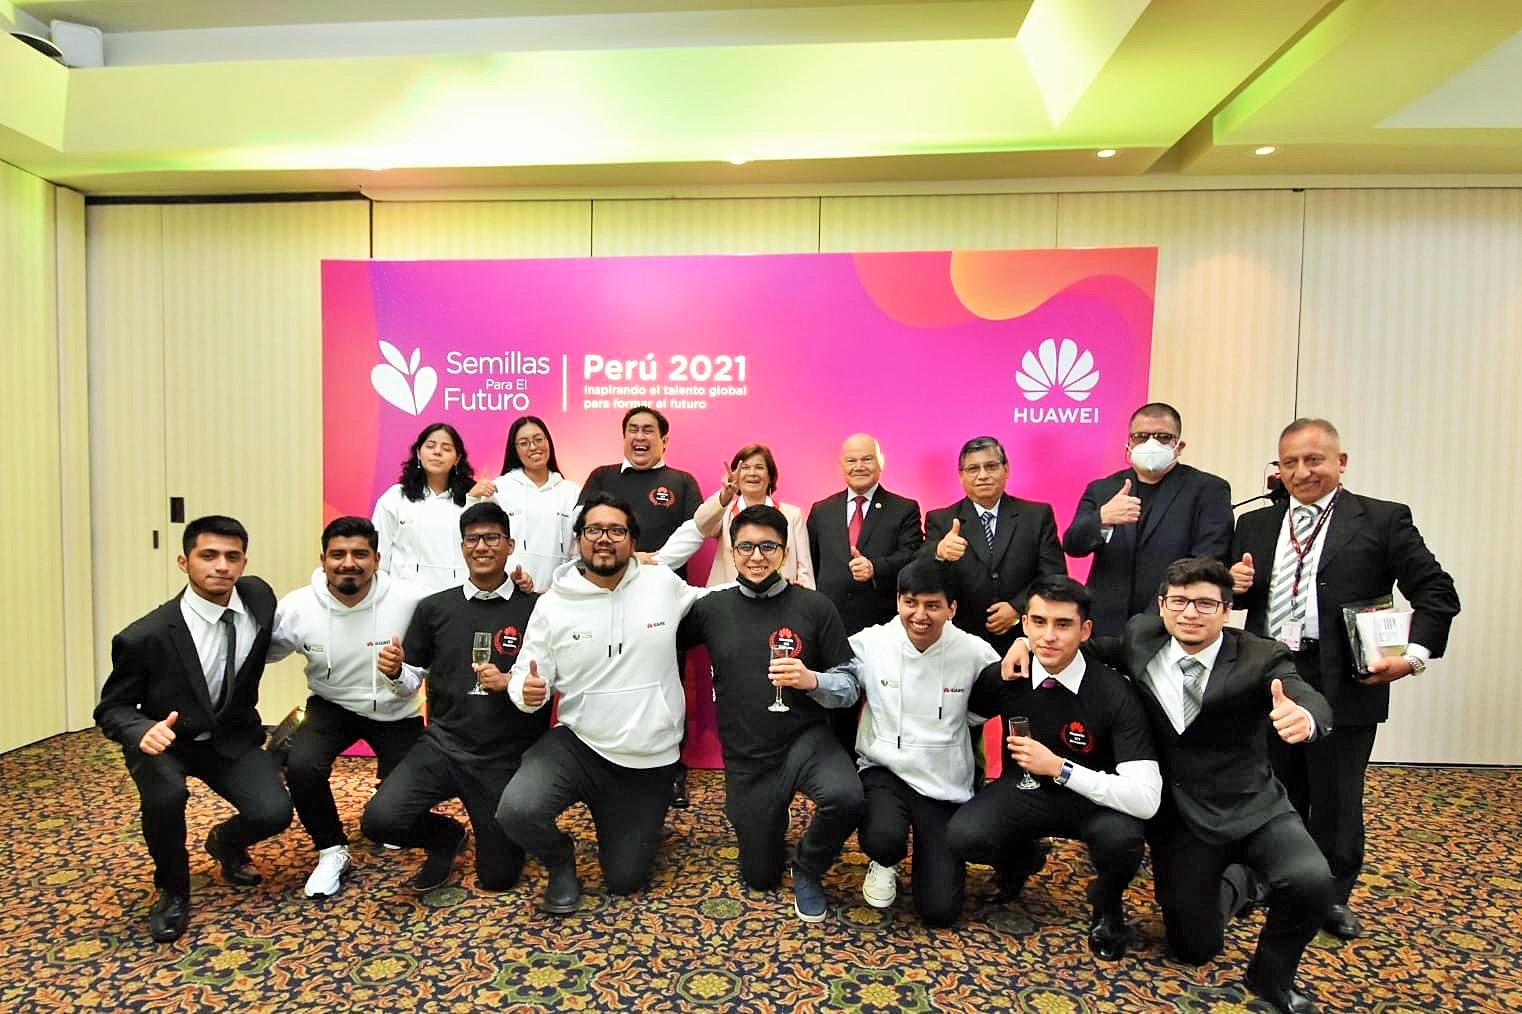 18 estudiantes y 3 docentes de UNMSM fueron reconocidos por HuaweiEmpresas tras ganar concursos Semillas para el futuro y Competencias TIC